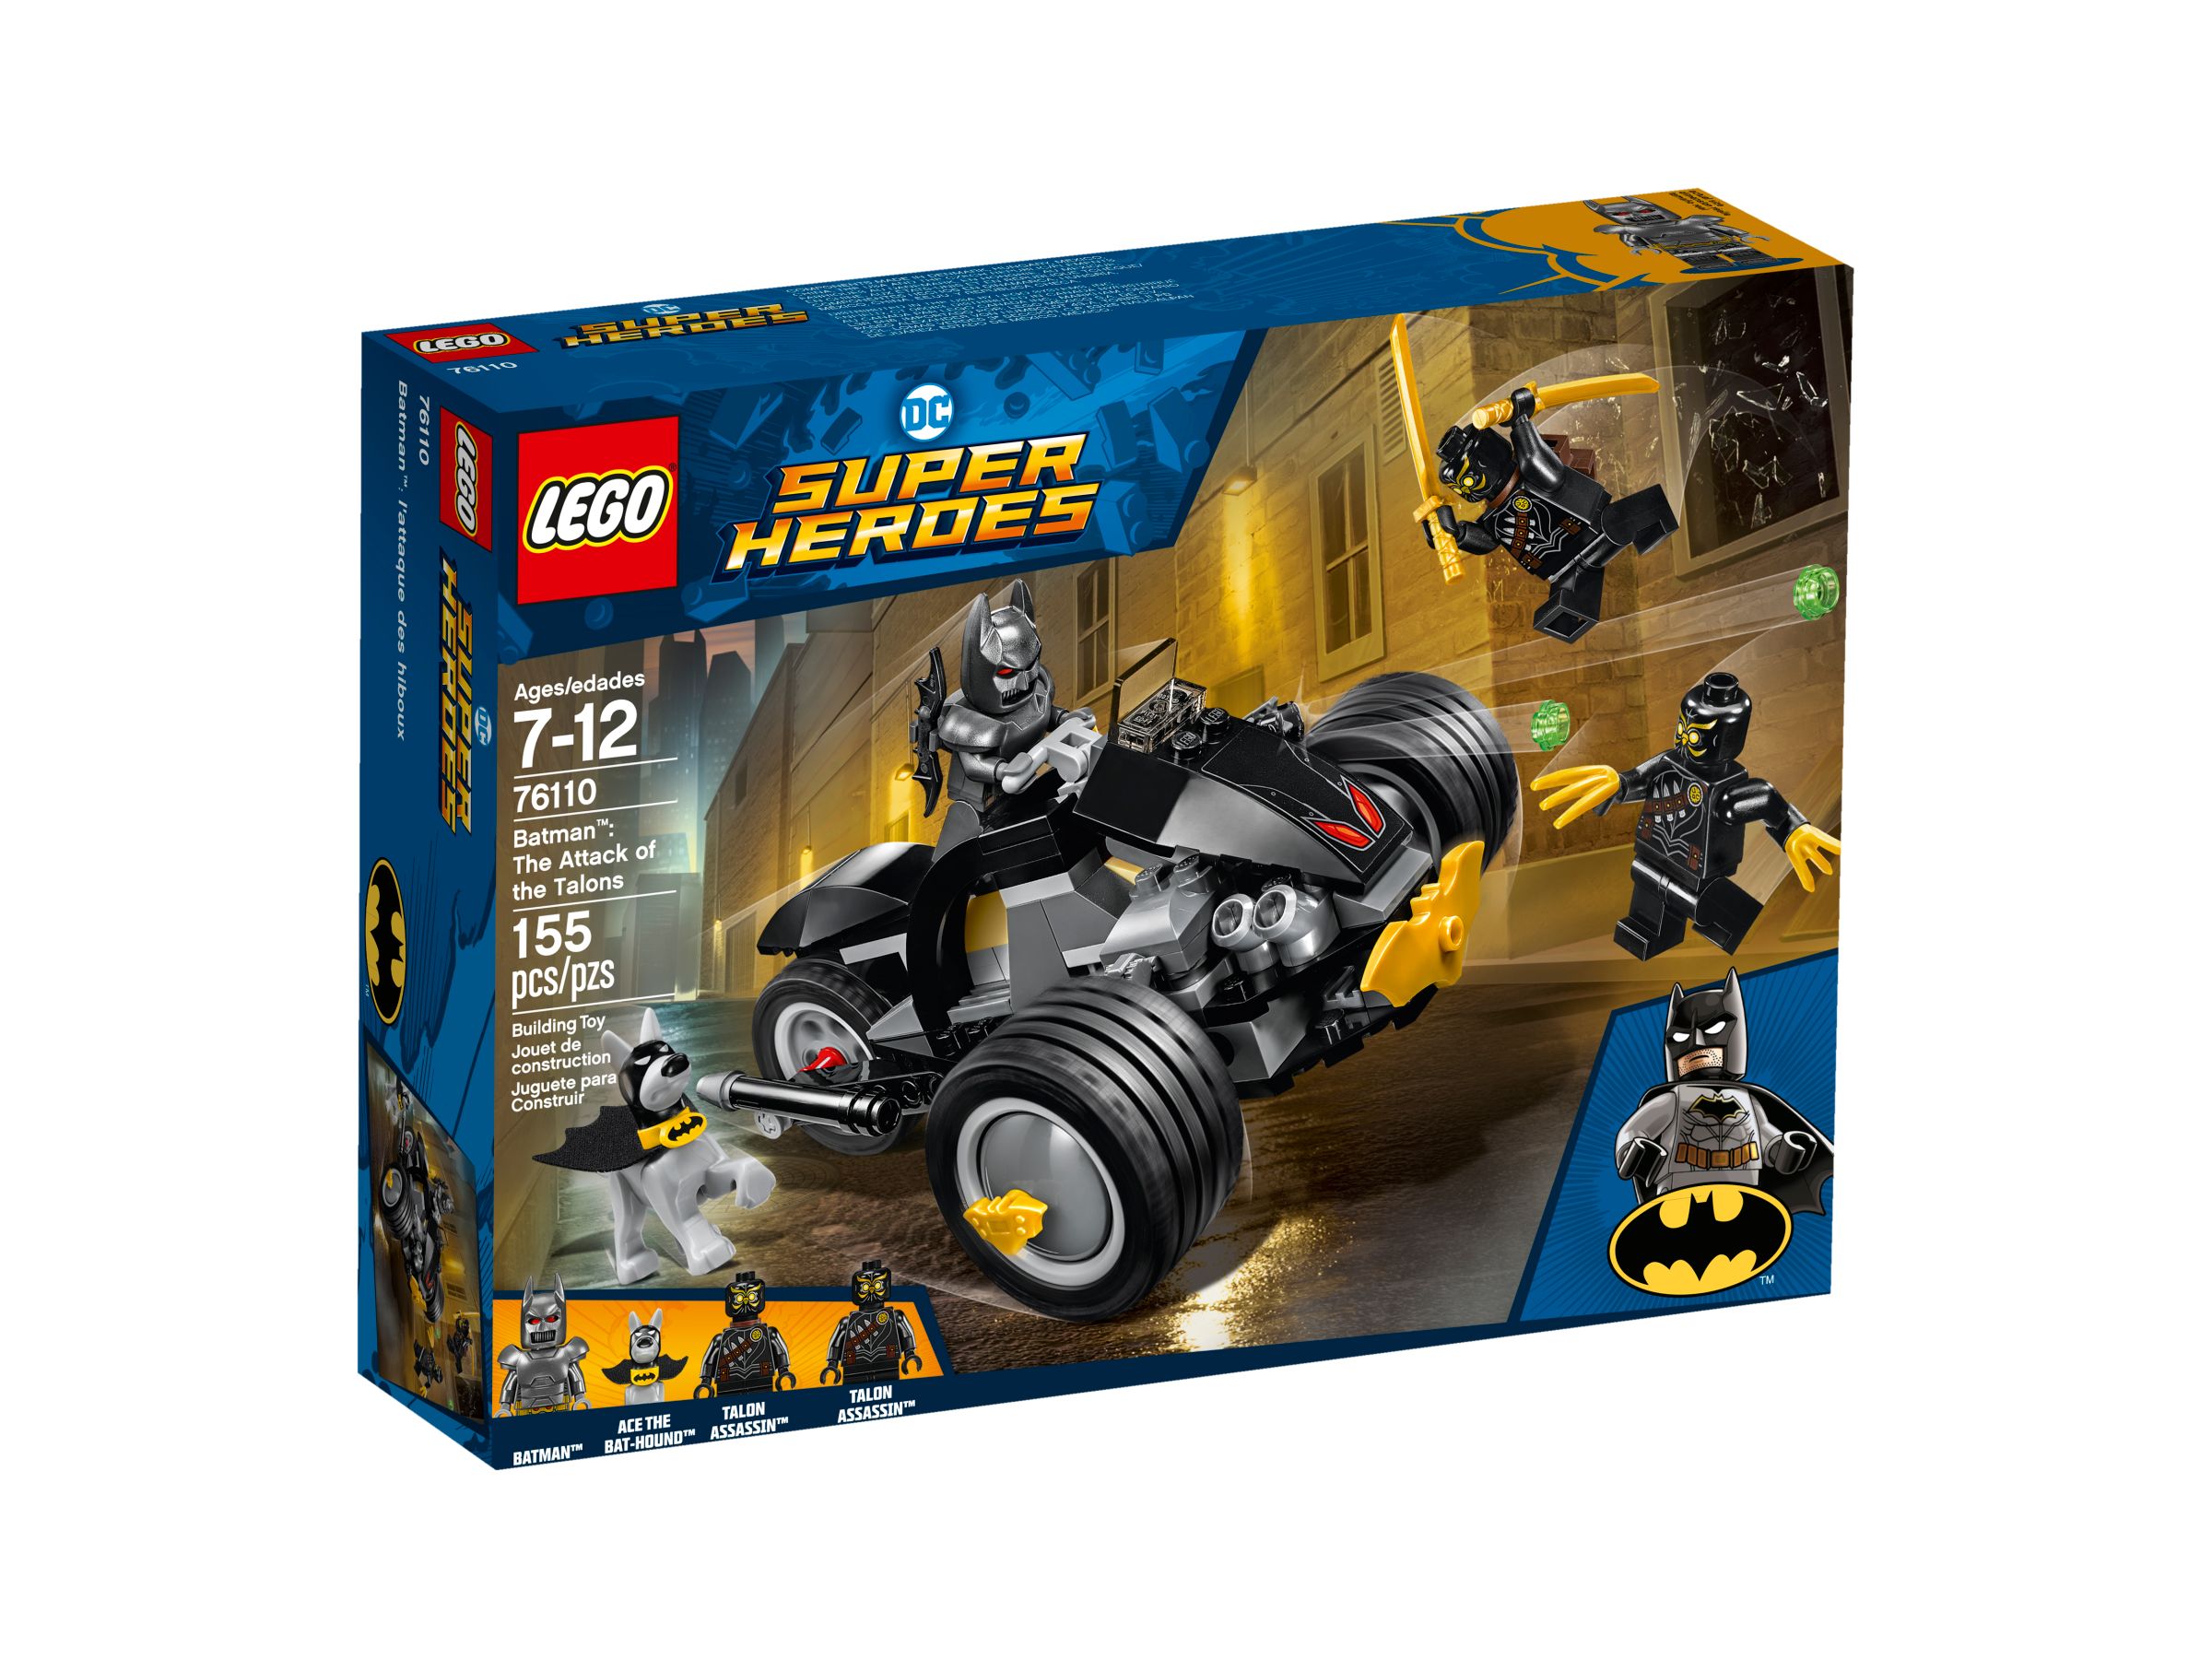 LEGO Super Heroes 76110 Batman™: Attacke der Talons LEGO_76110_alt1.jpg